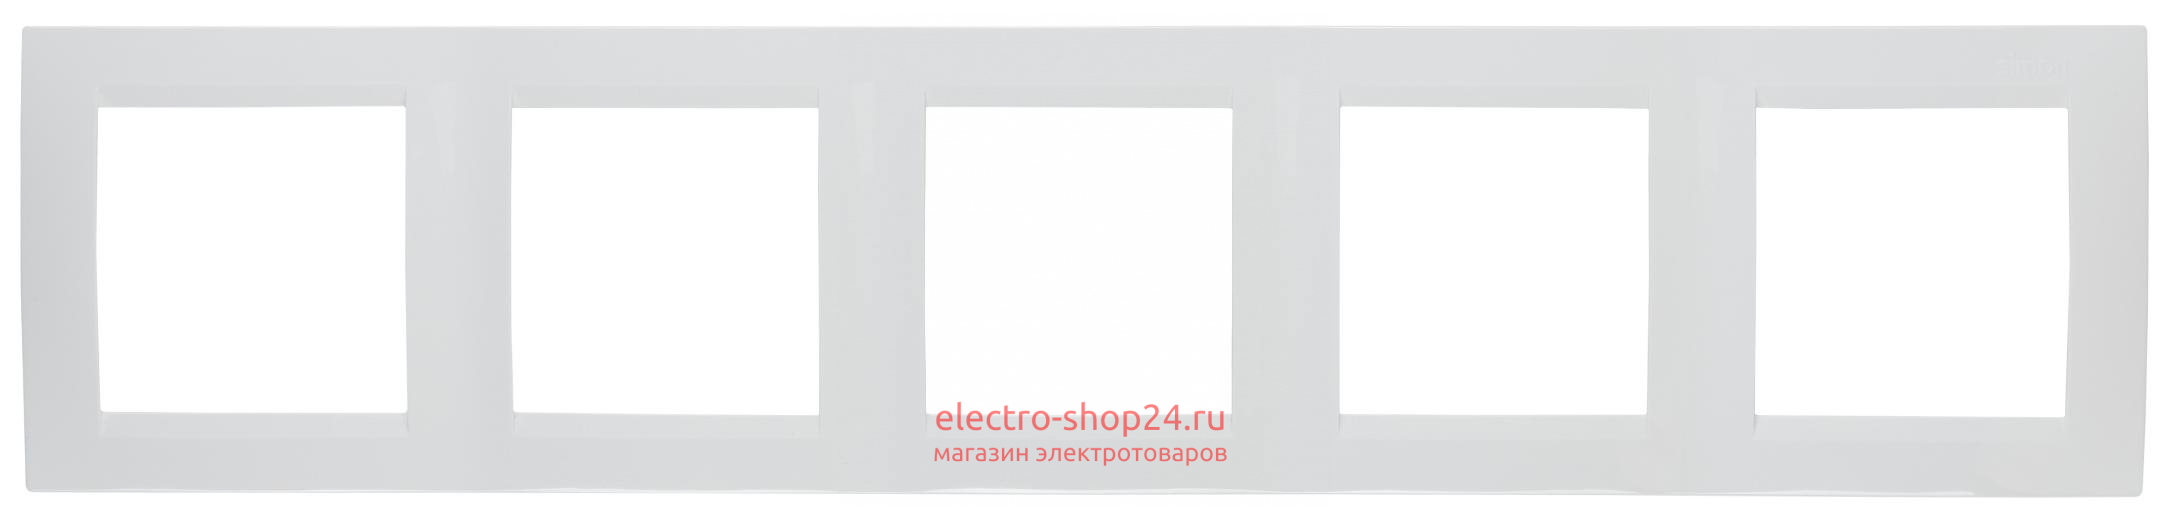 Рамка Simon 15 универсальная 5 постов белый 1500650-030 1500650-030 - магазин электротехники Electroshop